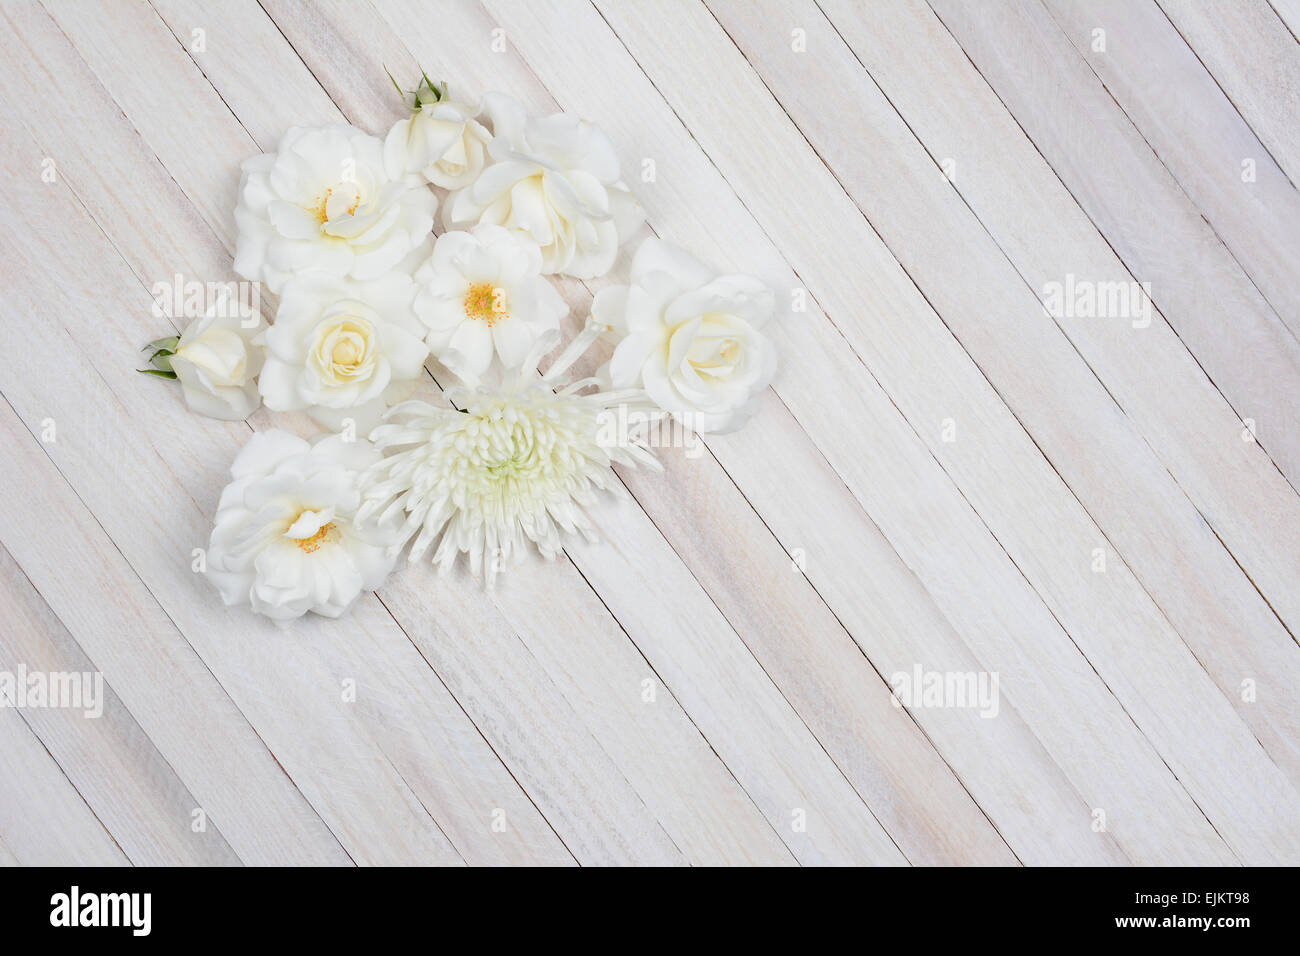 Passage tiré d'un groupe de fleurs blanches sur une table en bois blanc. Format horizontal avec l'exemplaire de l'espace. Banque D'Images